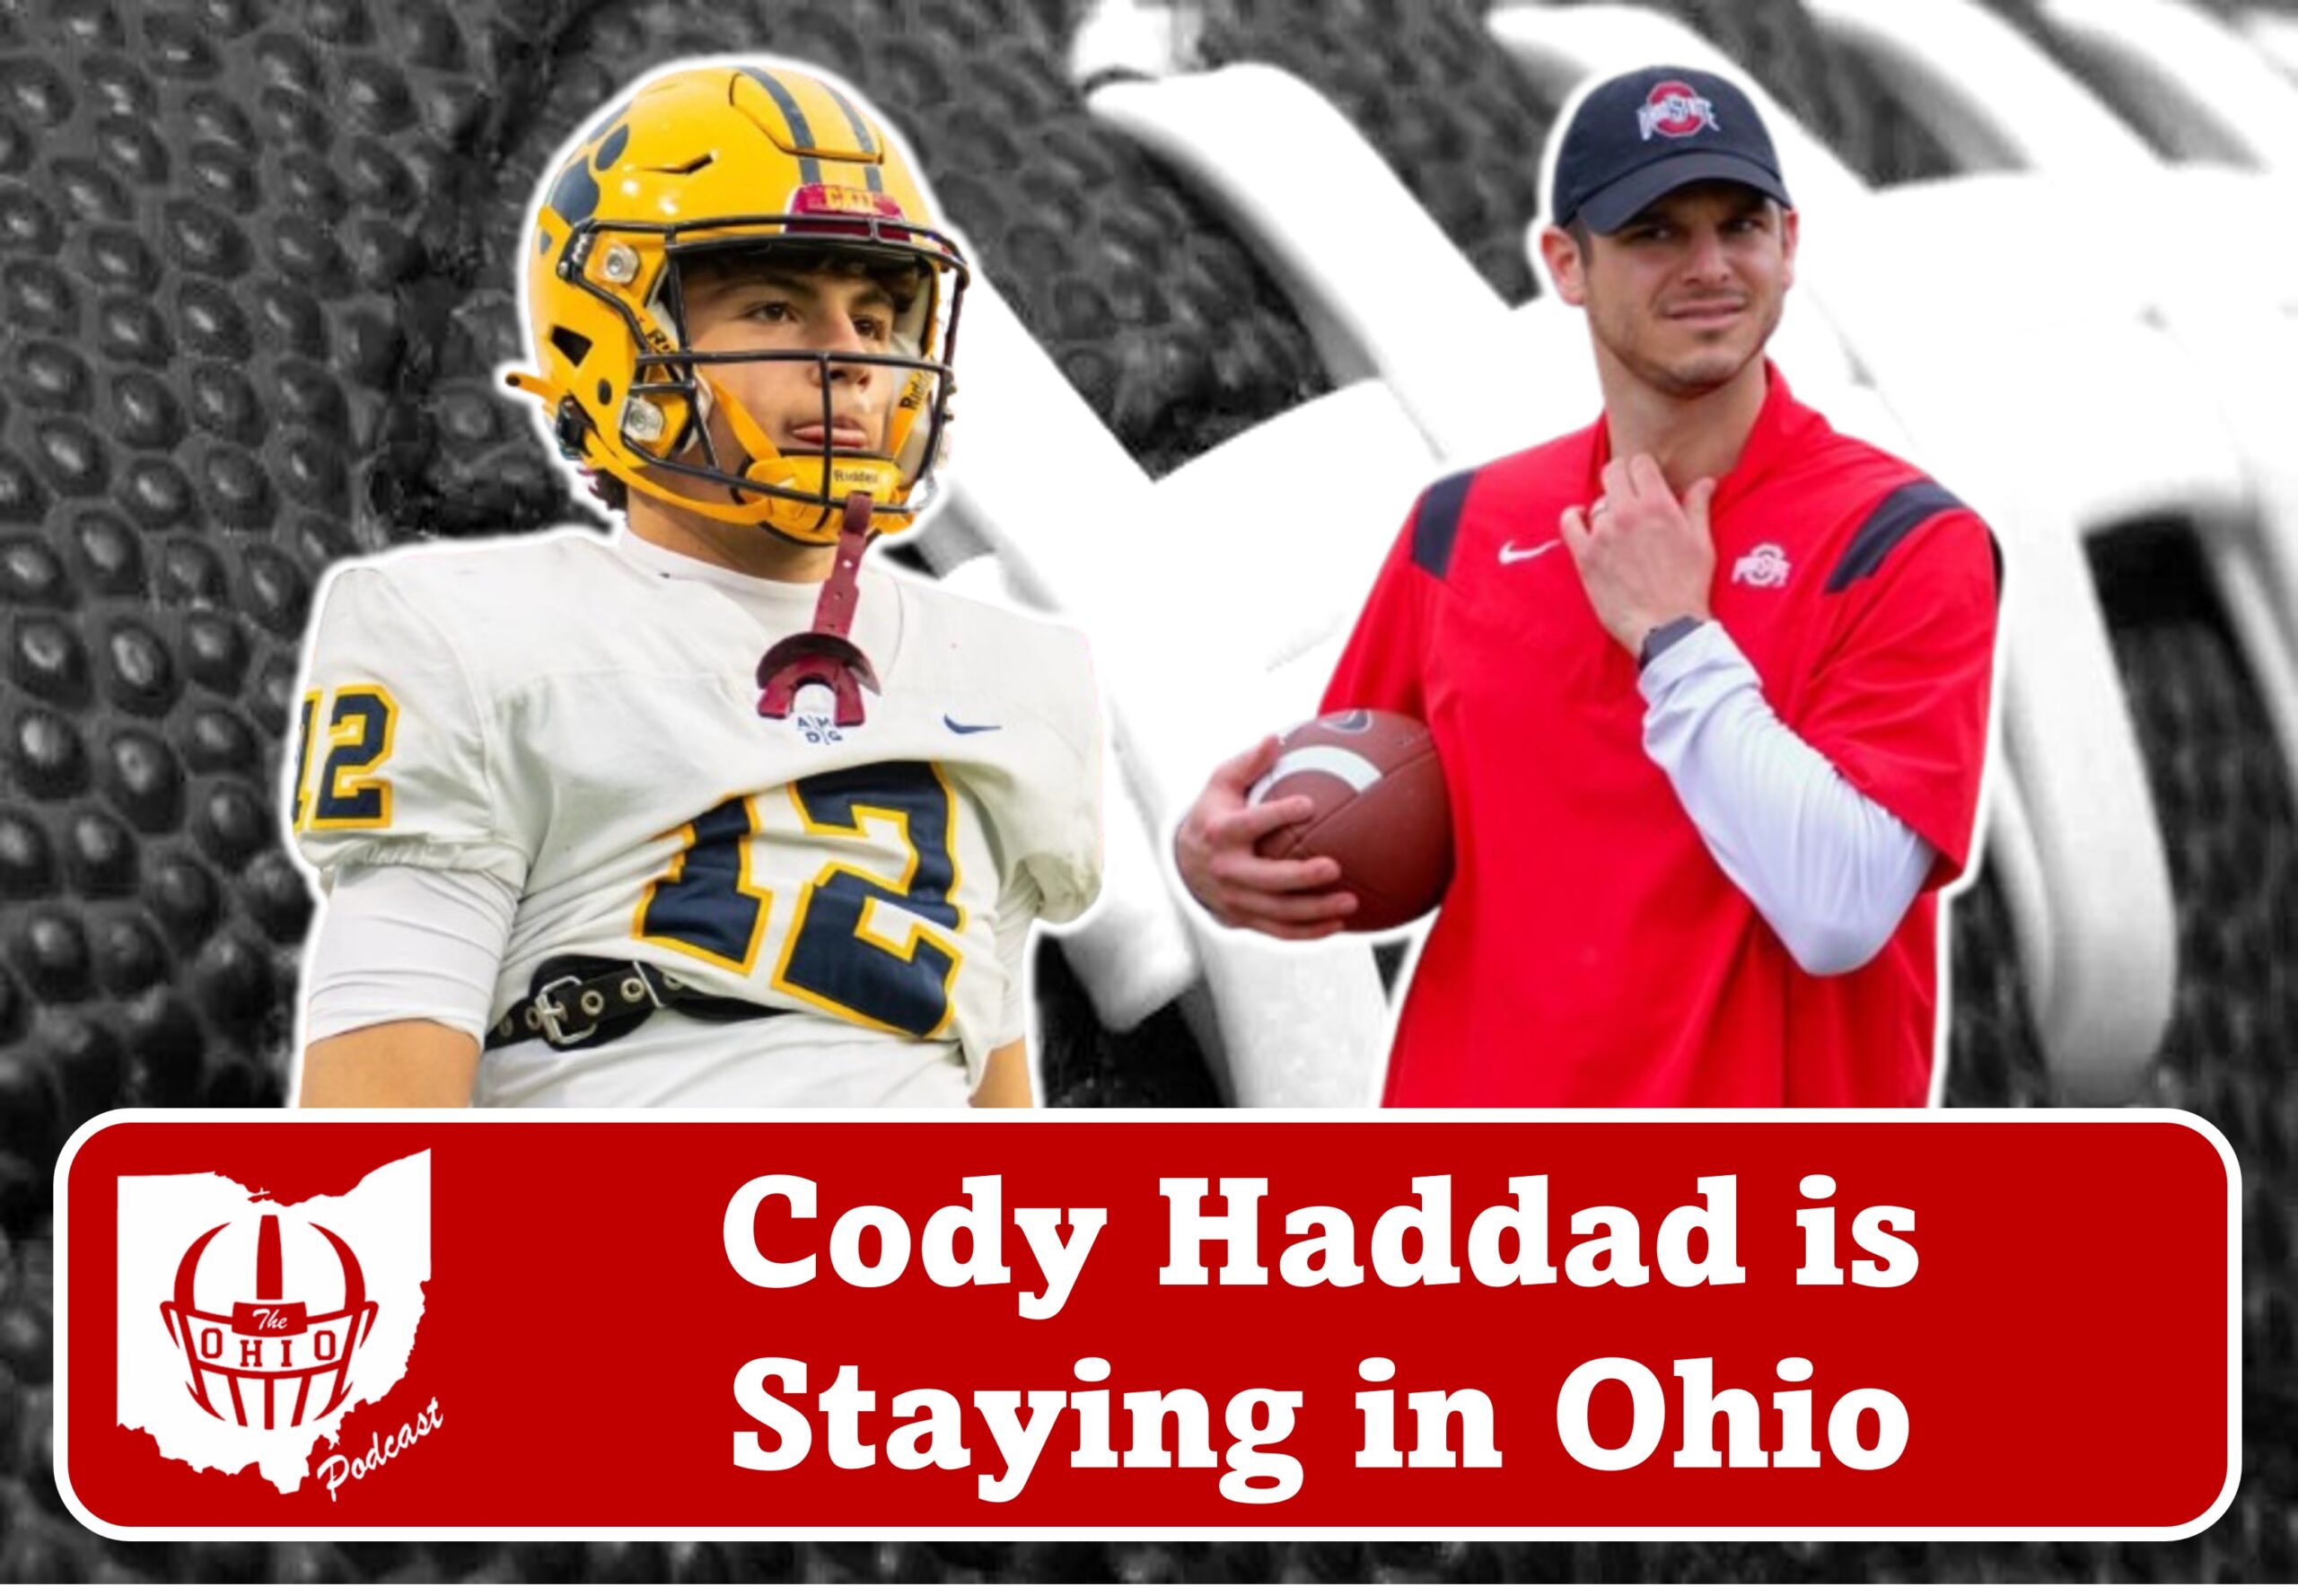 Cody Haddad Stays Home